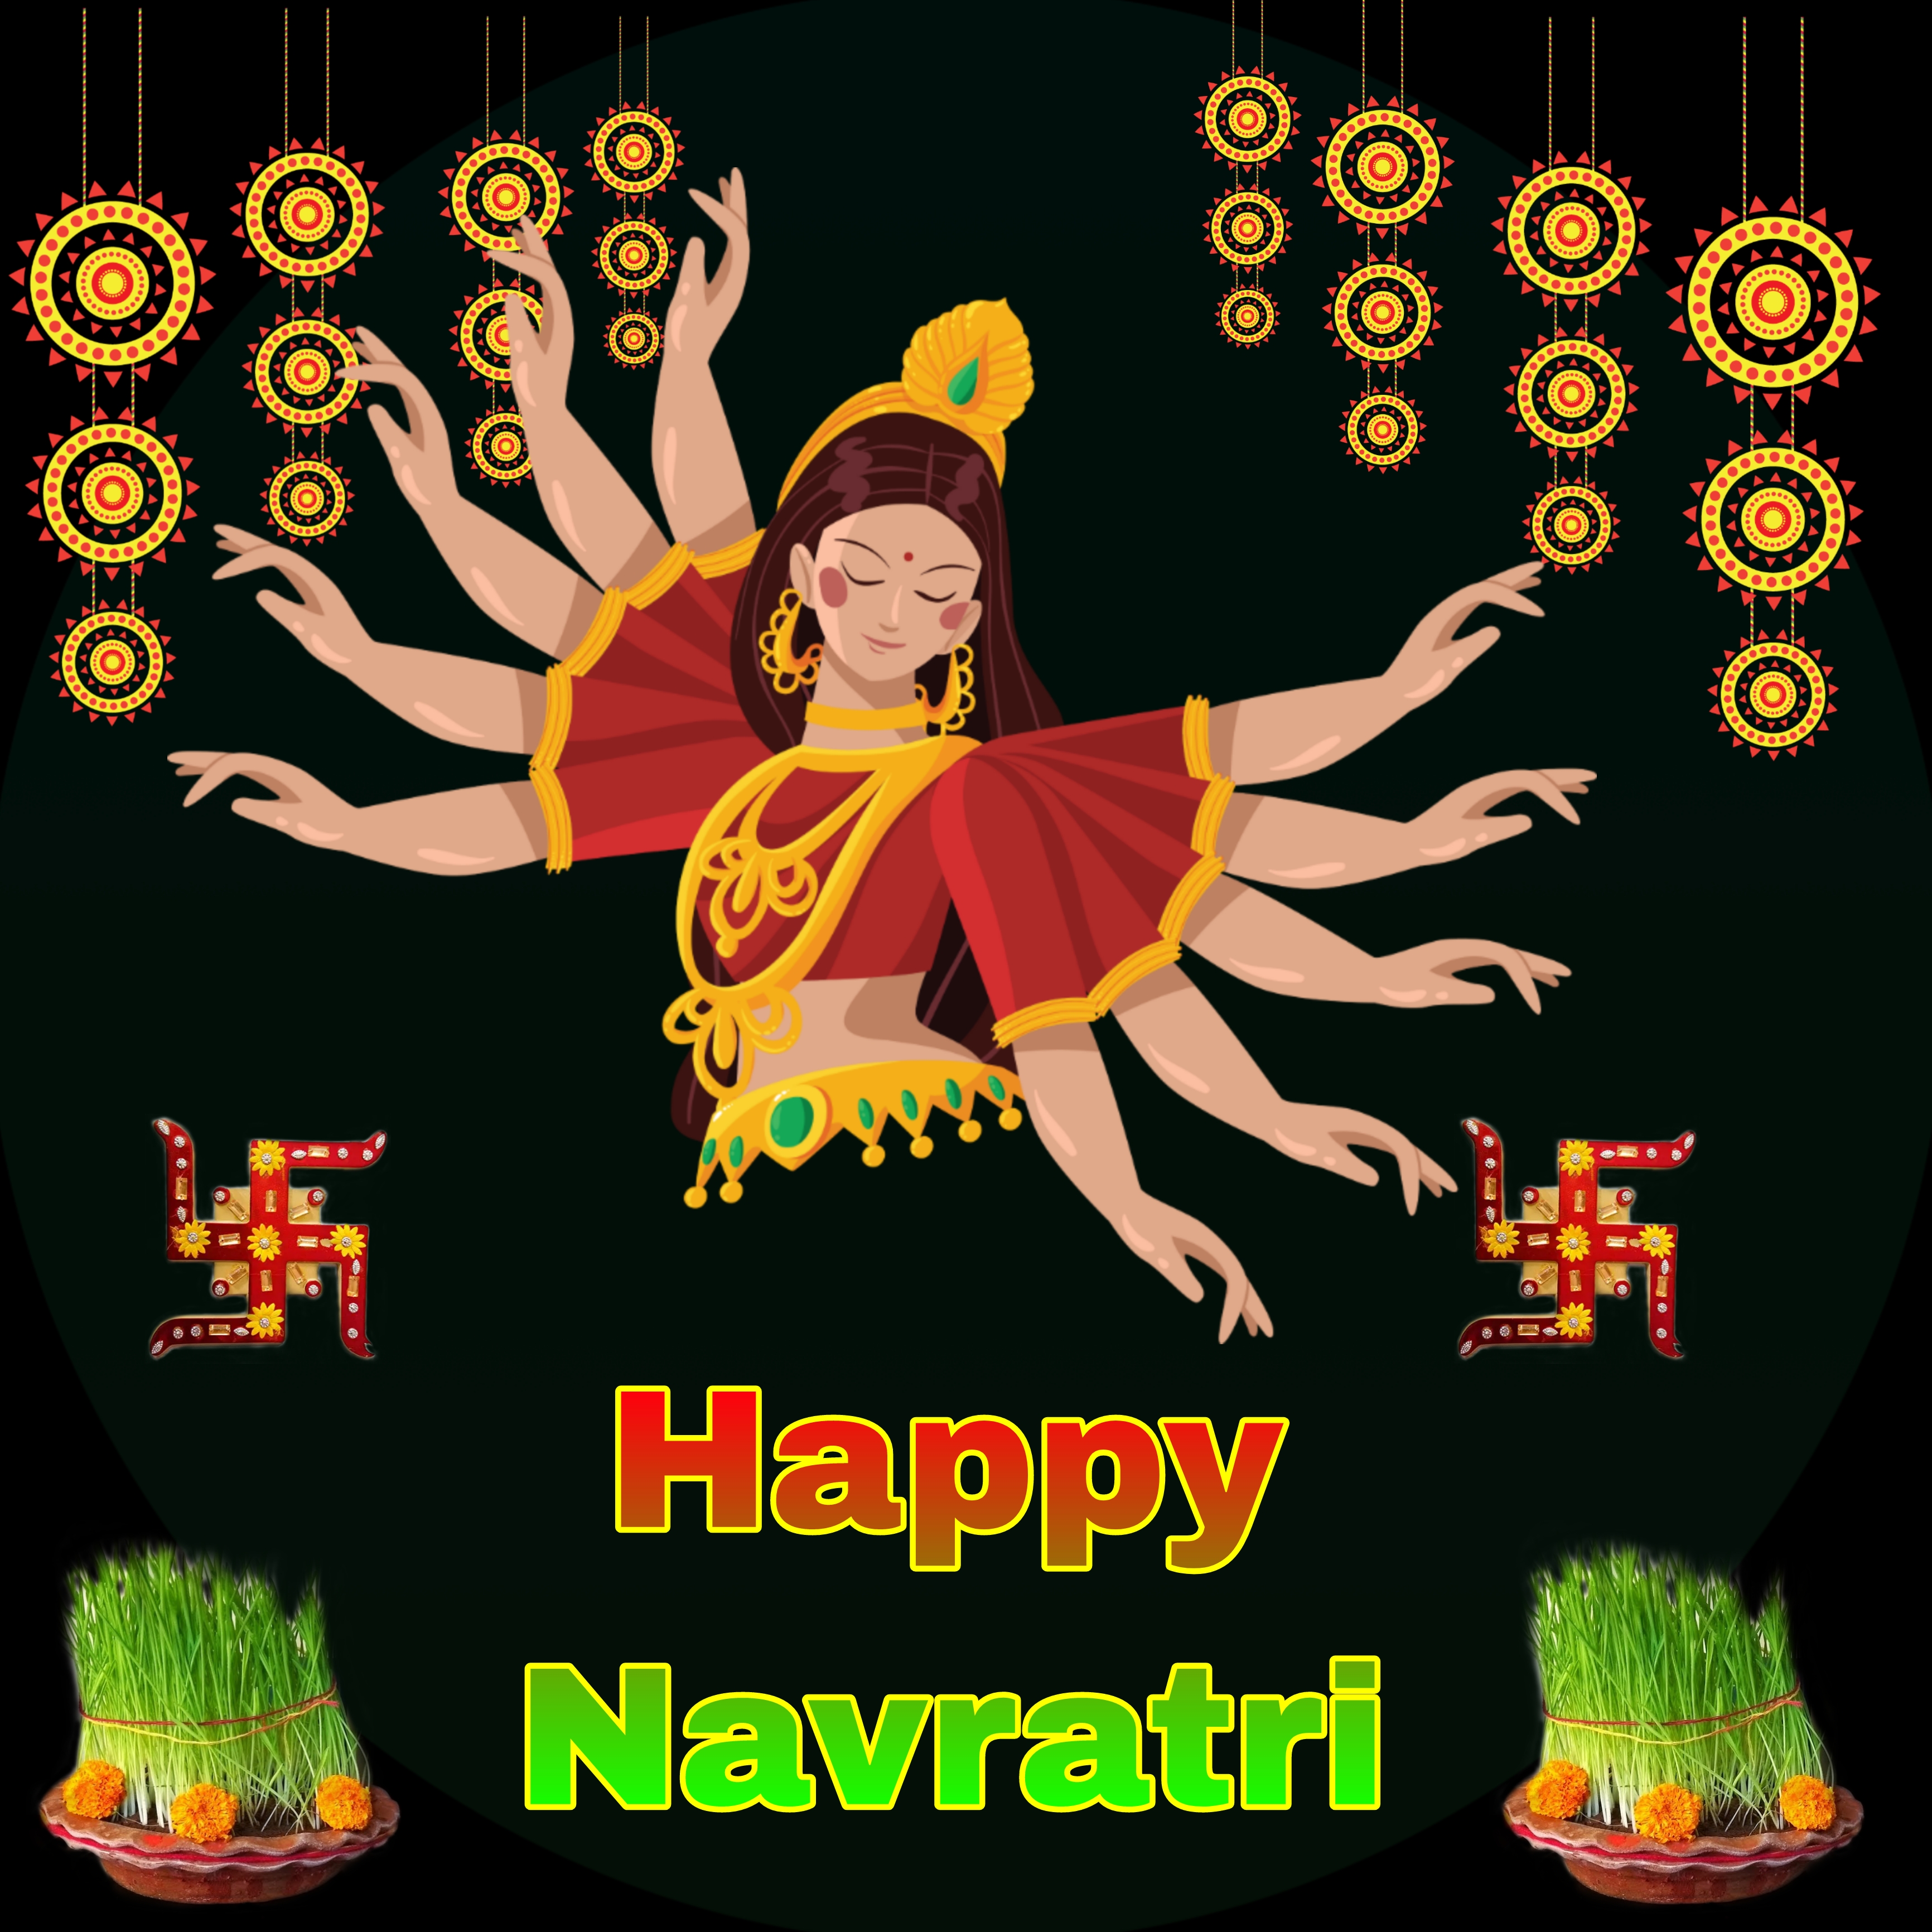 happy navratri images in hindi download-  Happy Navratri images photos wallpapers-  MAA Durga image for Navratri photo-  Happy Navratri Images